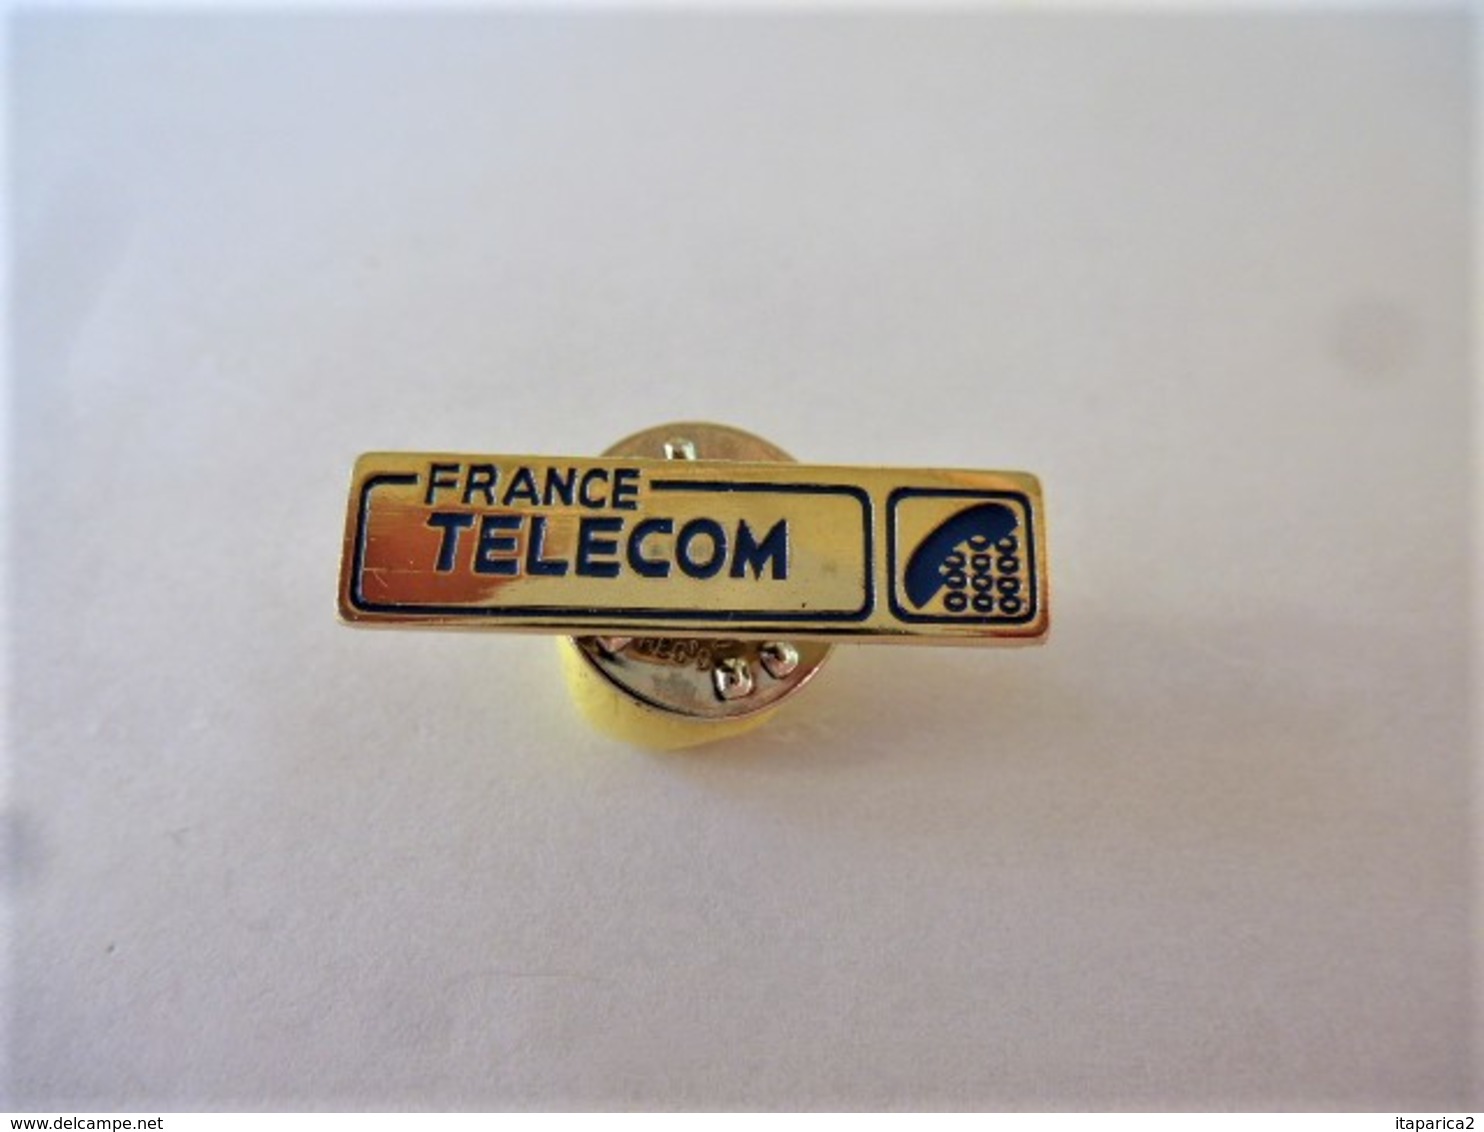 PINS FRANCE TELECOM LOGO  /  / 33NAT - France Telecom